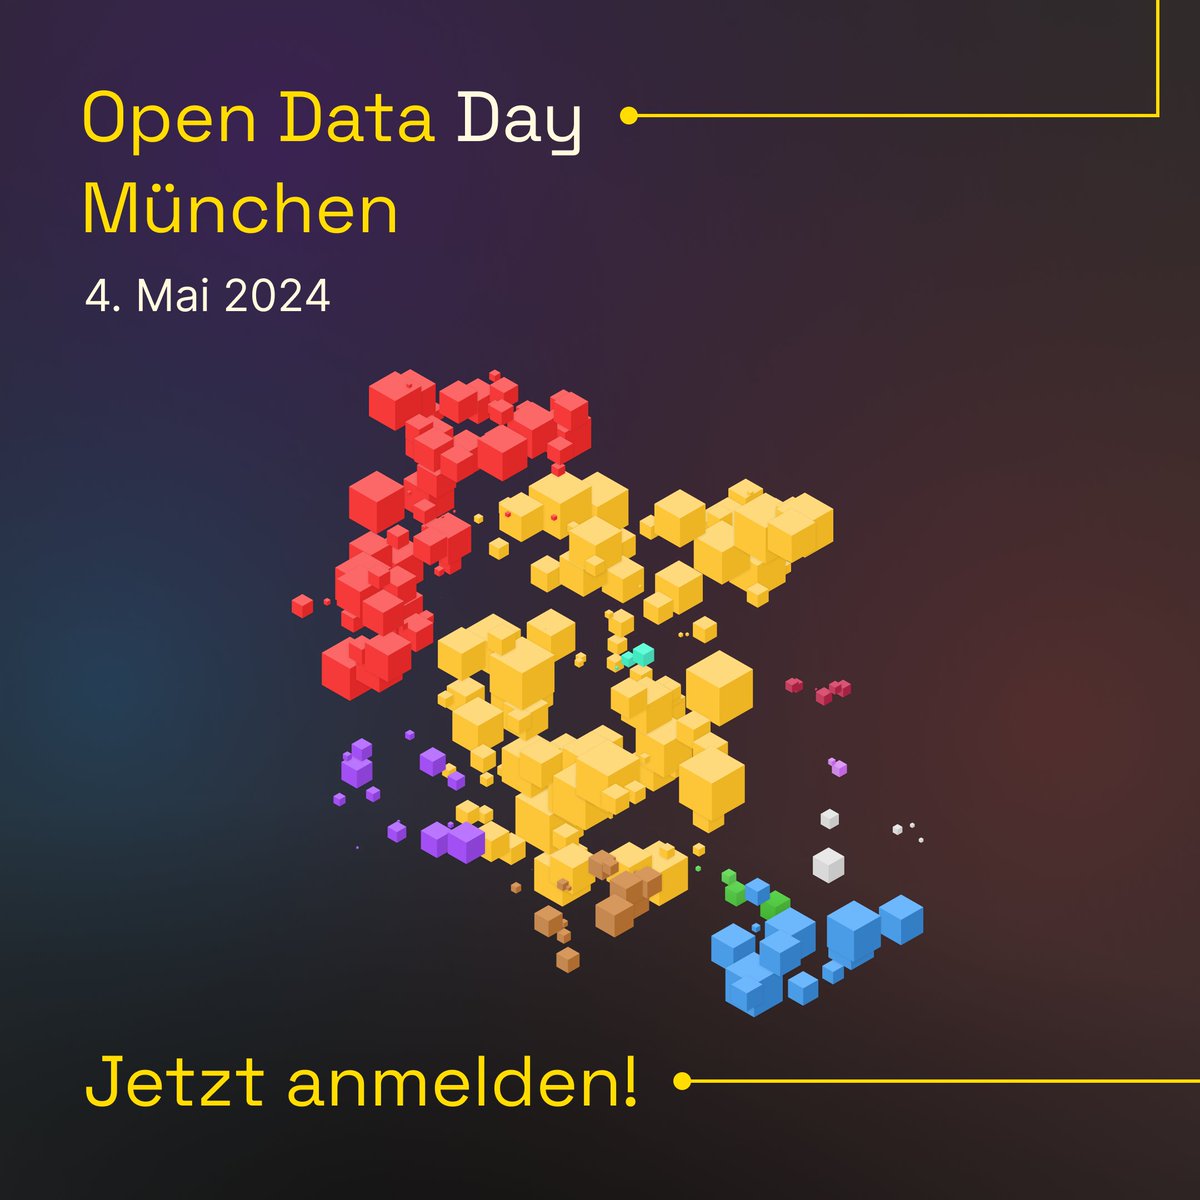 Jetzt anmelden zum #OpenData Day #München am 4. Mai 2024! #oddmuc24 In Zusammenarbeit mit @ByteBayern + @codeformuenchen veranstaltungen.muenchen.de/rit/veranstalt…